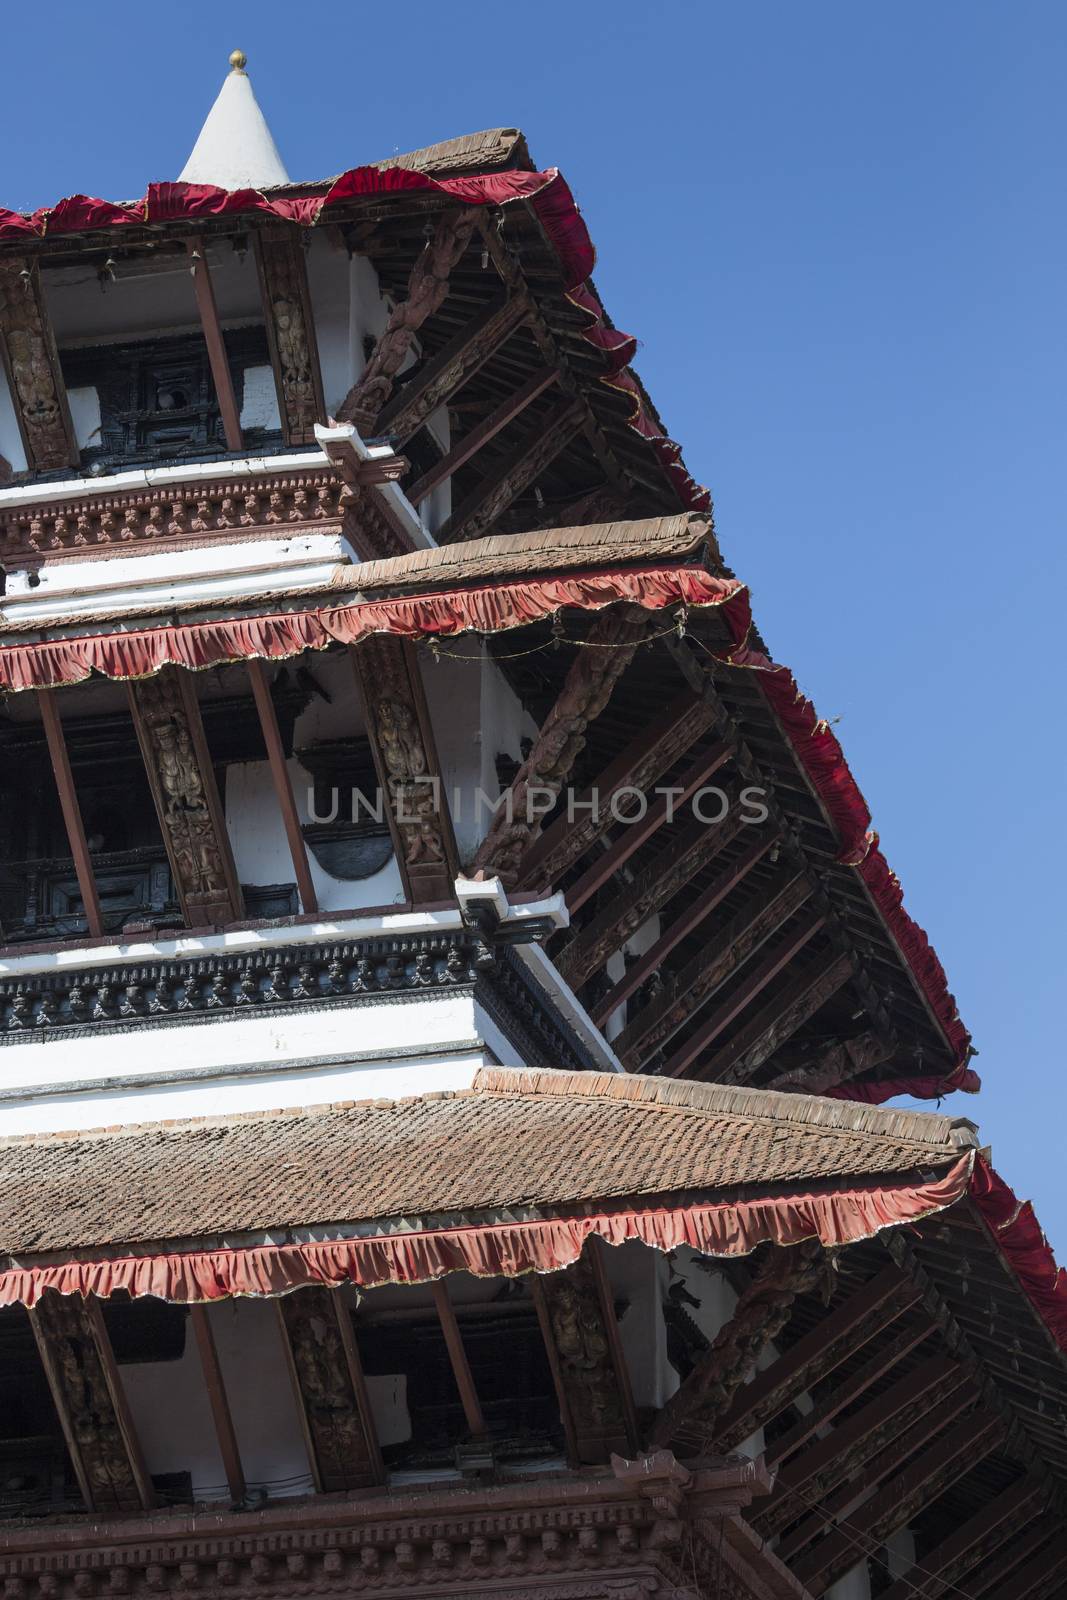 Kathmandu's Durbar Square, Nepal

